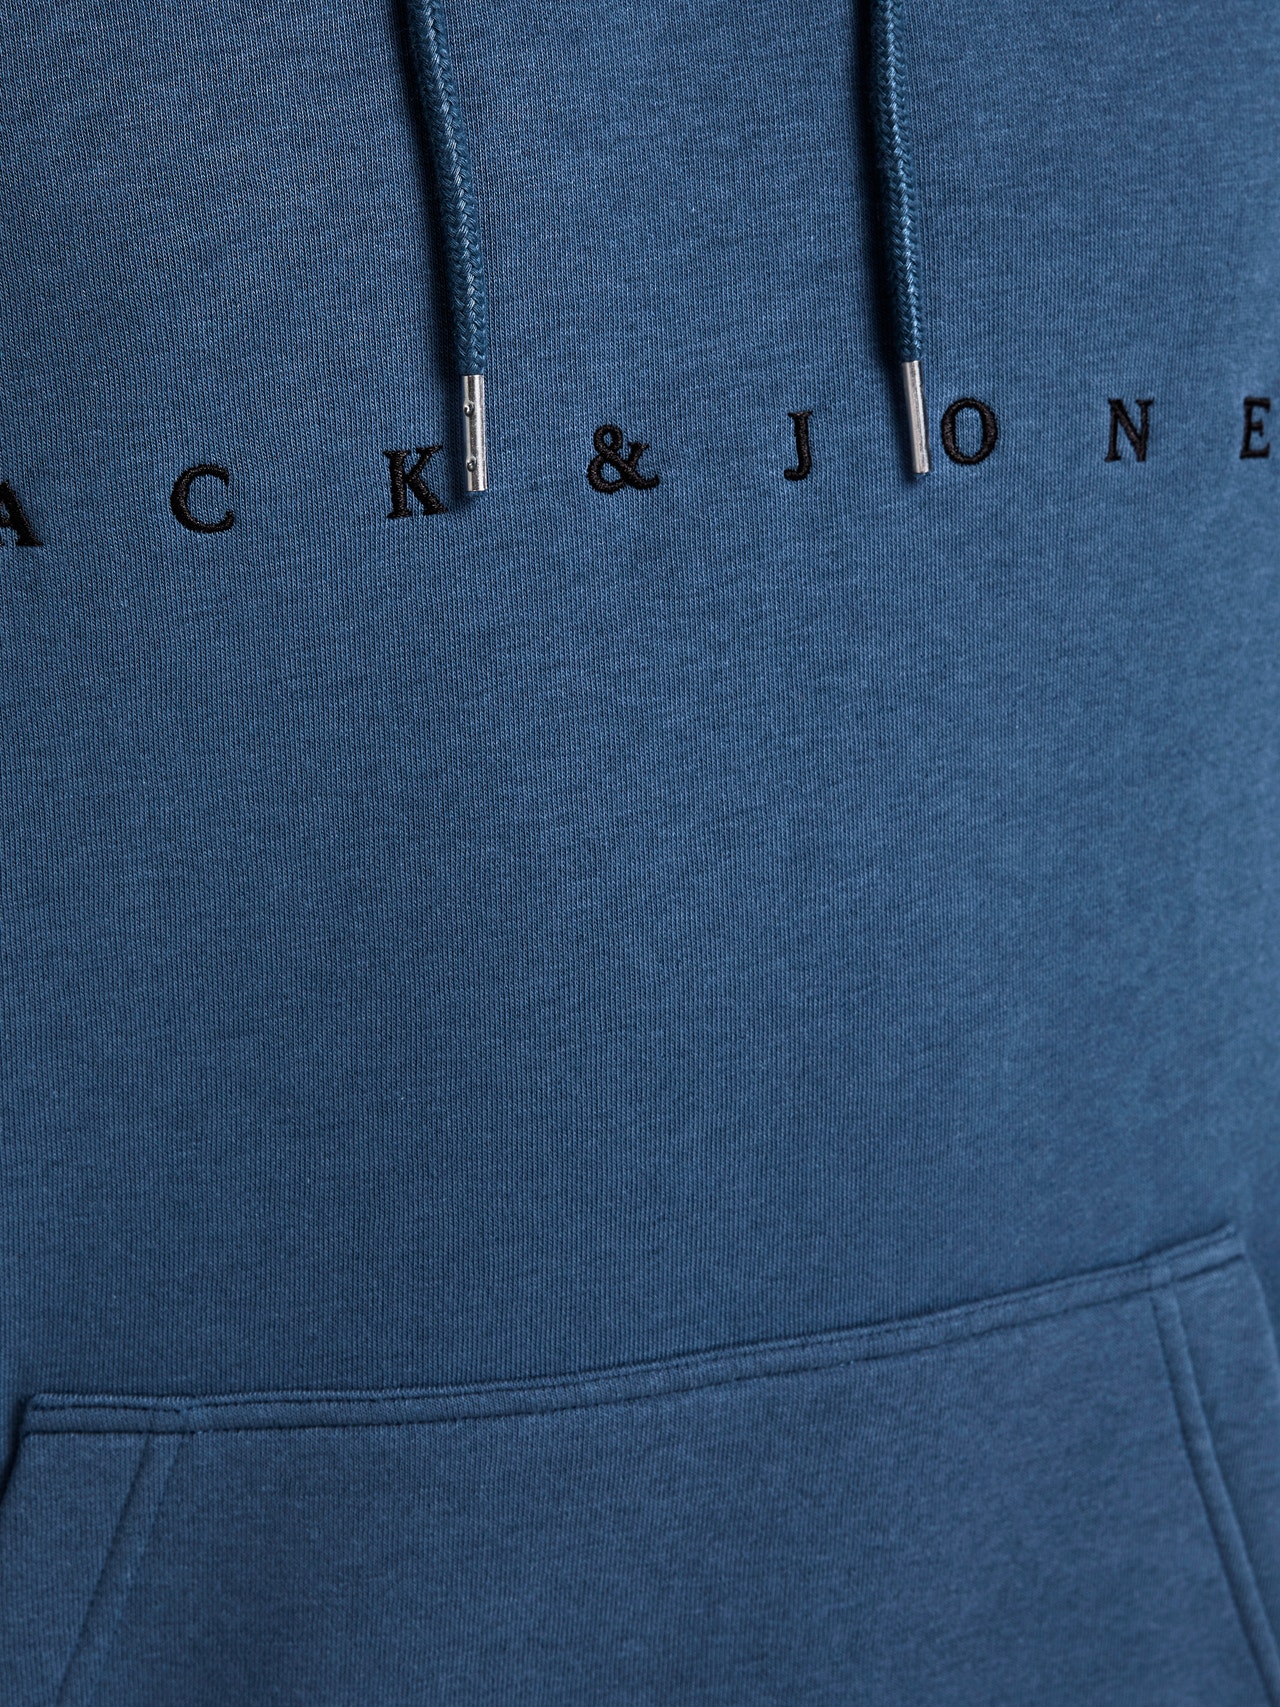 Jack & Jones Logo Hoodie -Ensign Blue - 12176864